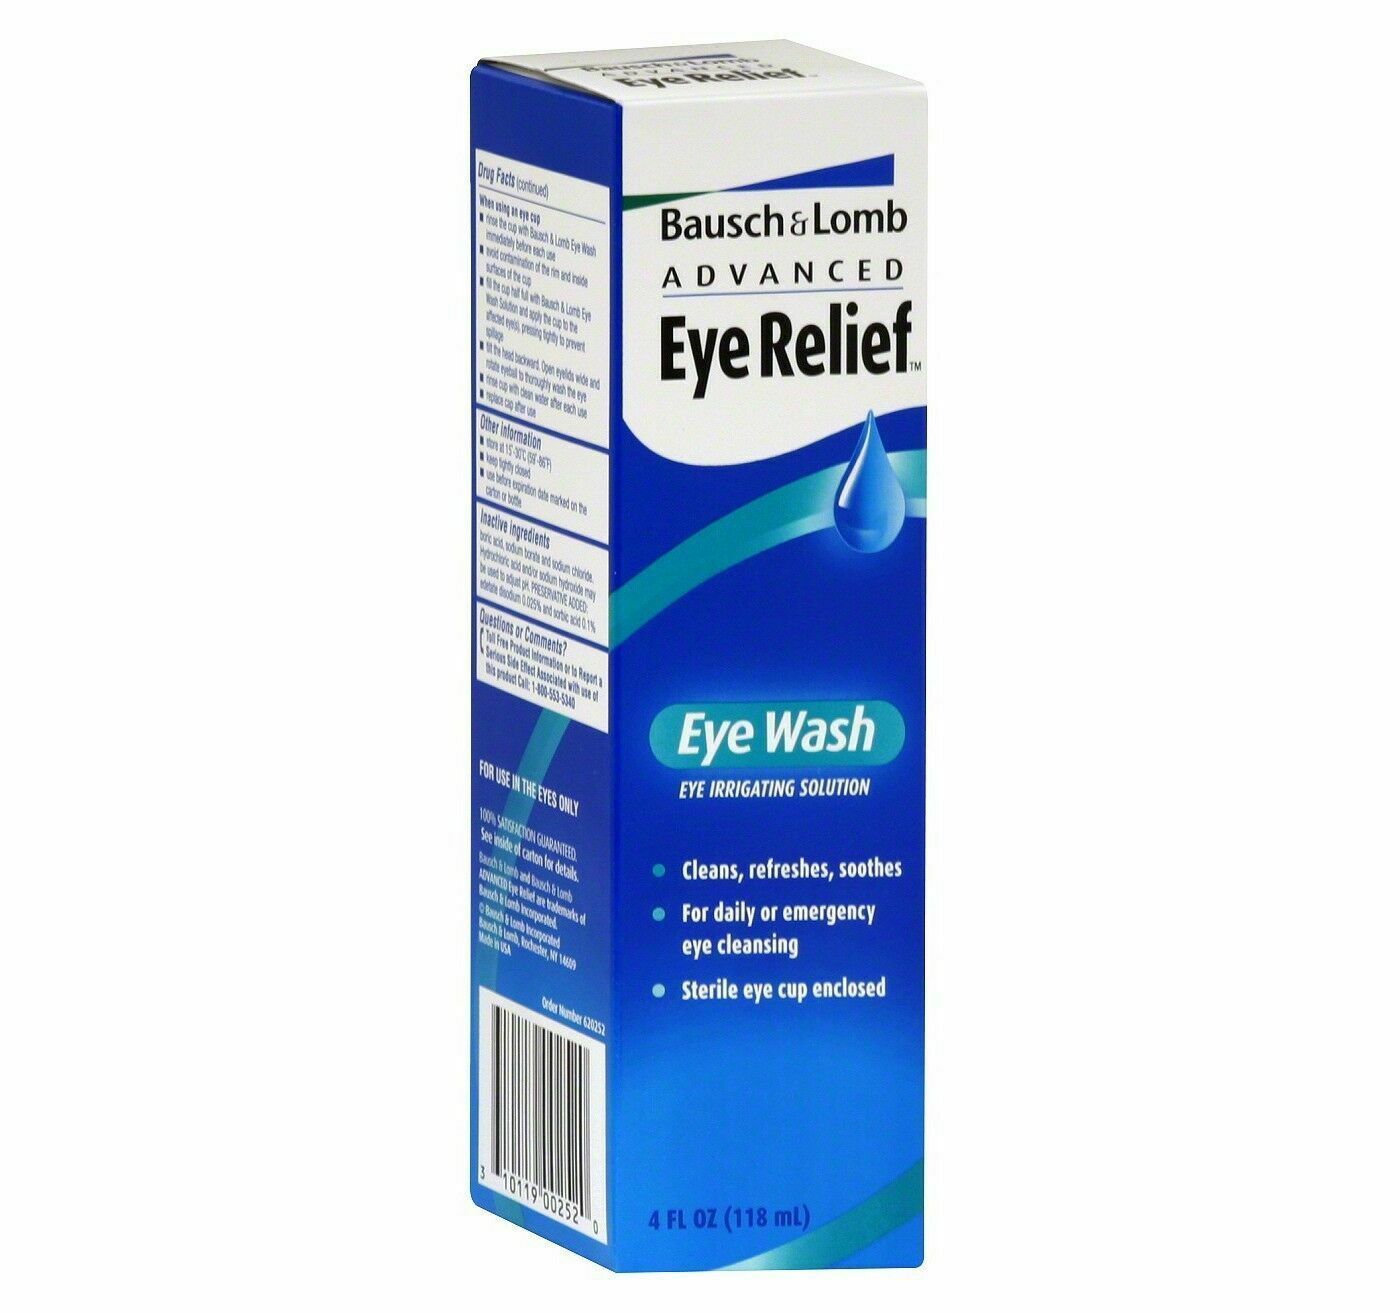 Bausch & Lomb Advanced Eye Relief Eye Wash Eye Irrigating Solution 4fl oz~Sealed